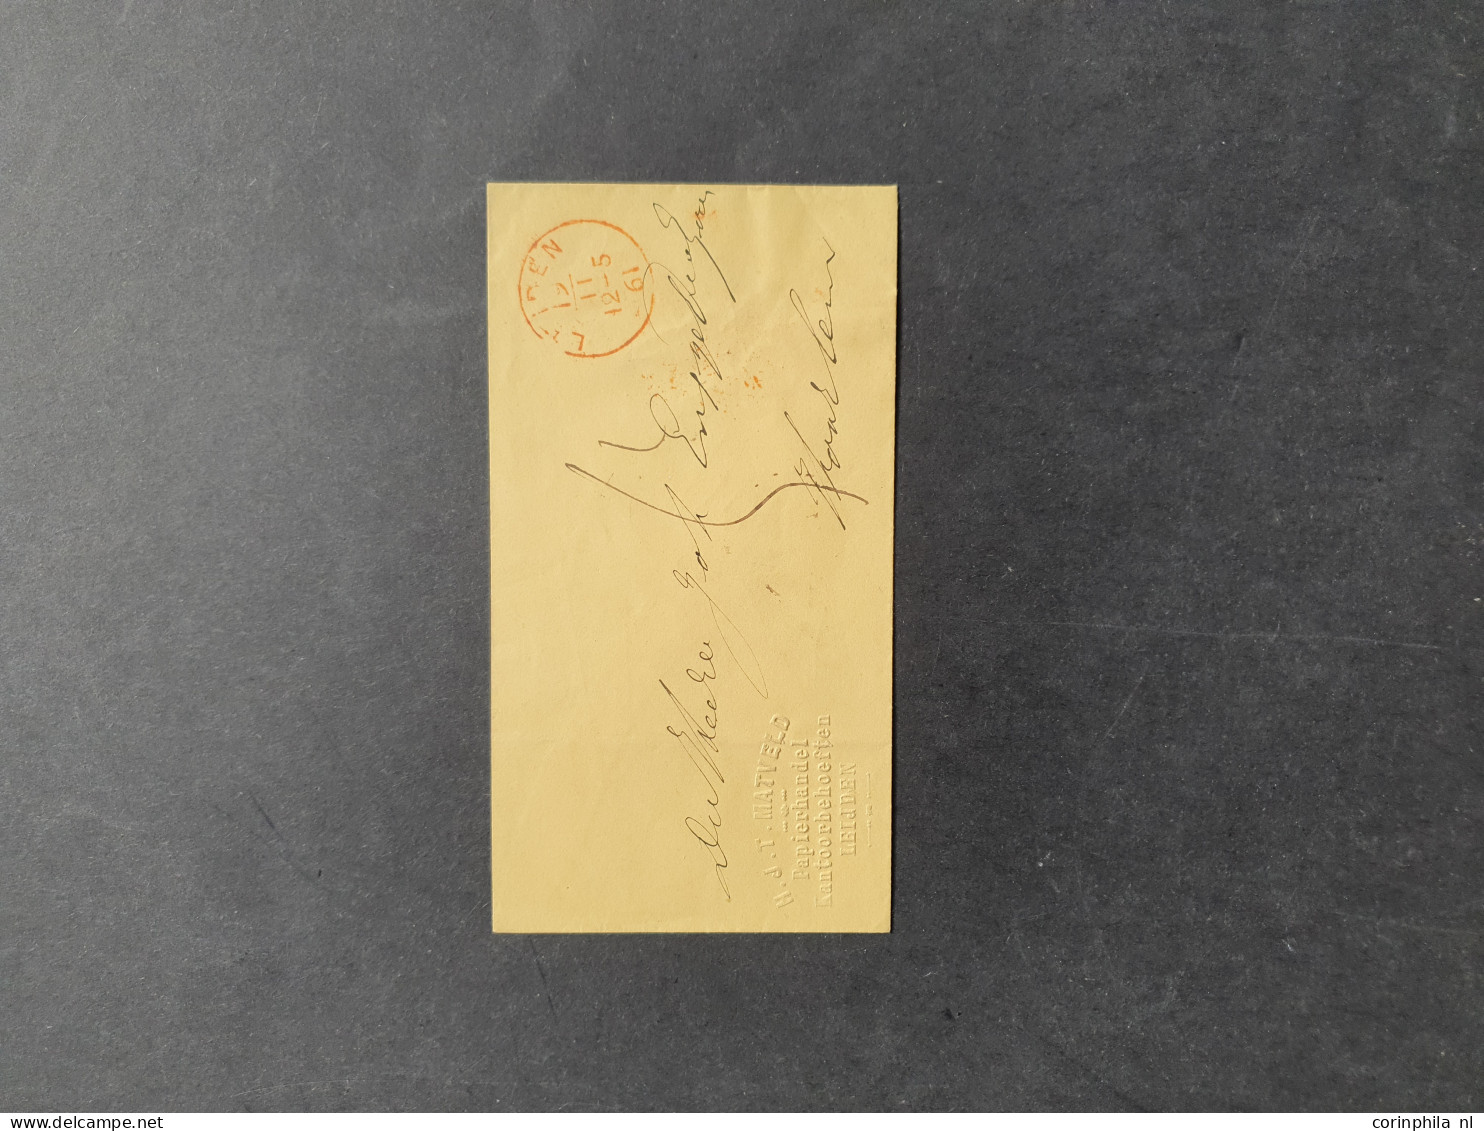 Cover 1871-1945ca. postwaardestukken, briefkaarten met adres afzender in reliëf (ca. 100 ex.) alle gebruikt w.b. reliëf 